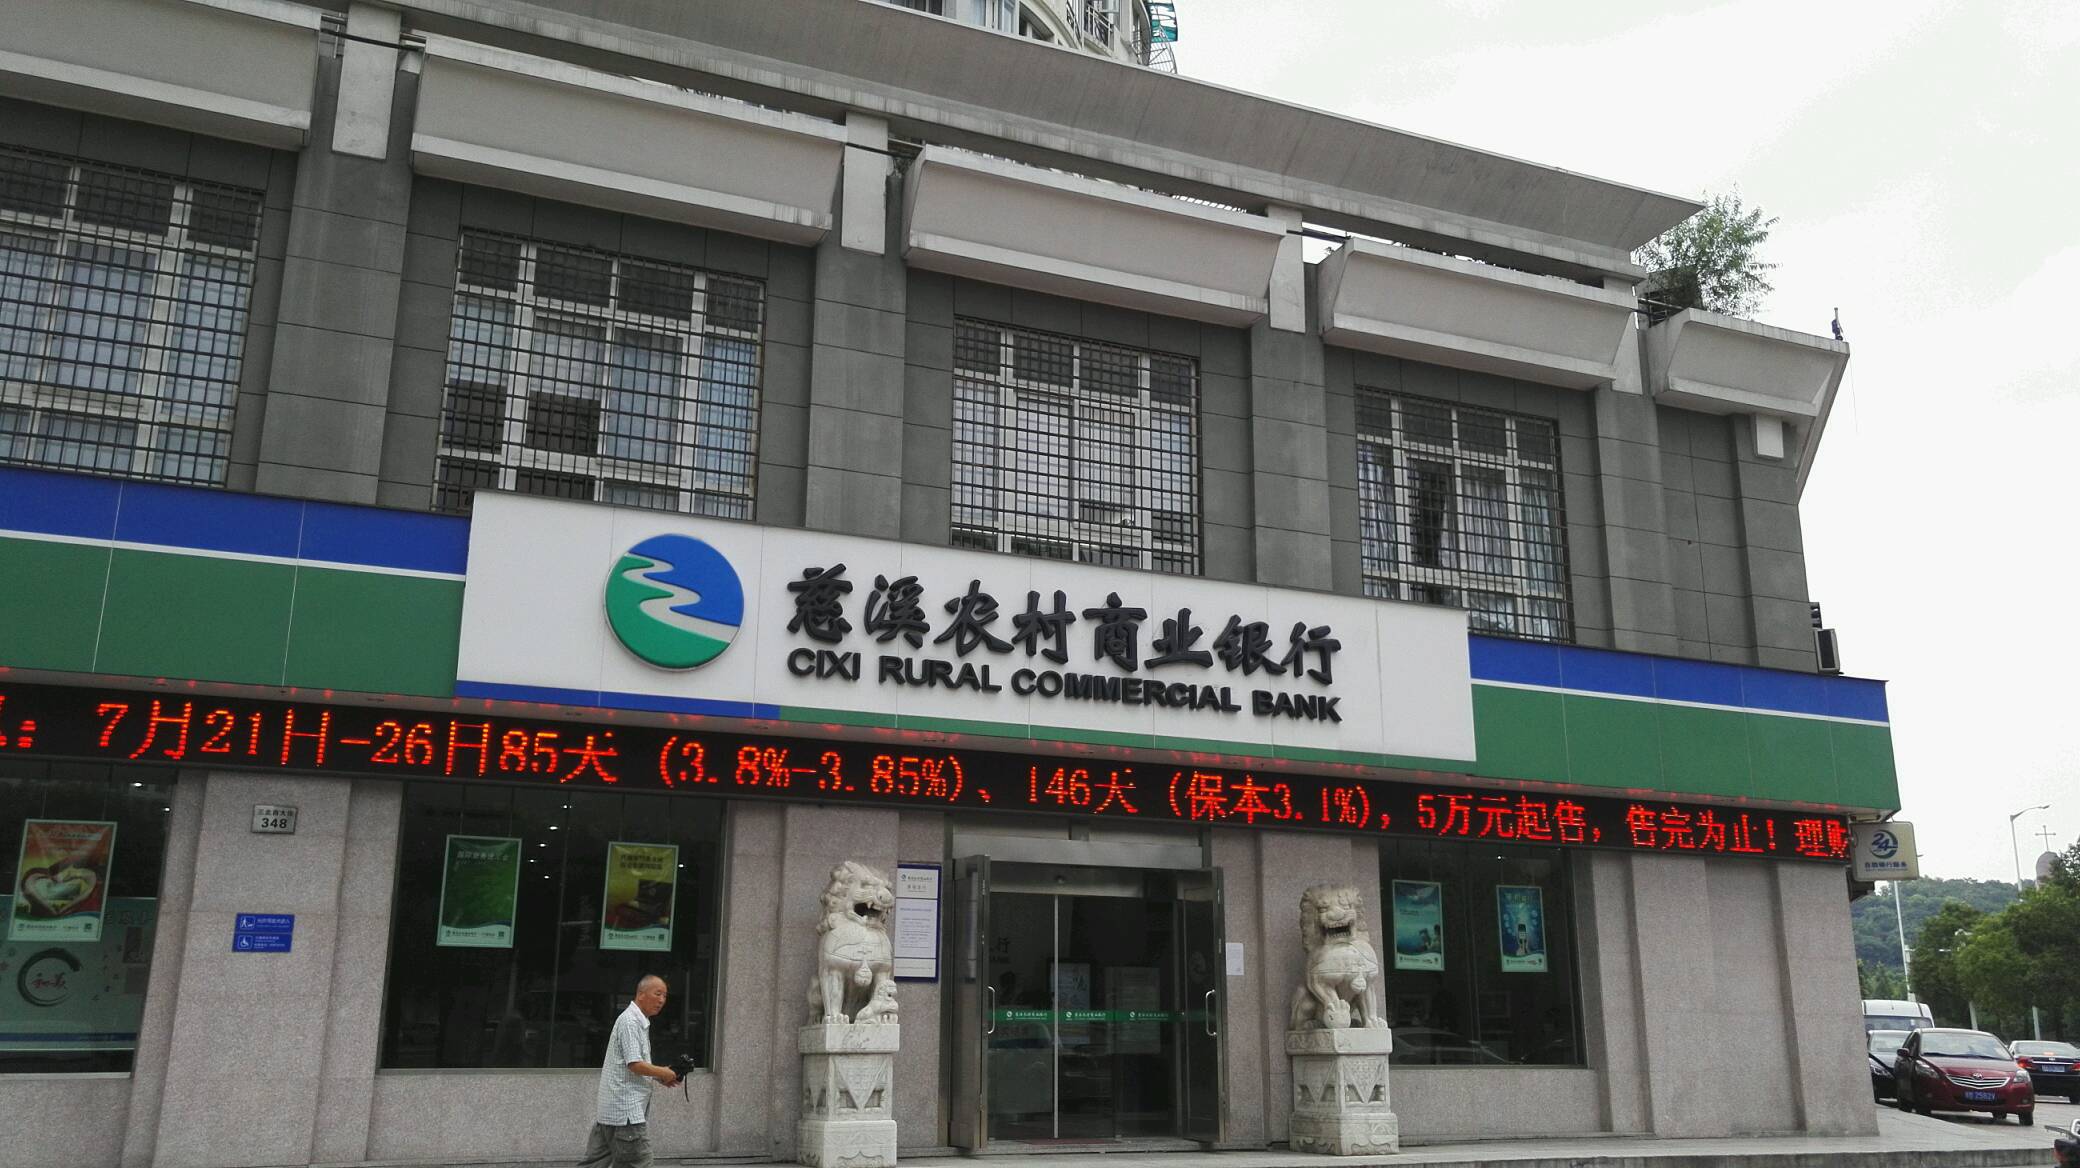 慈溪農村商業銀行